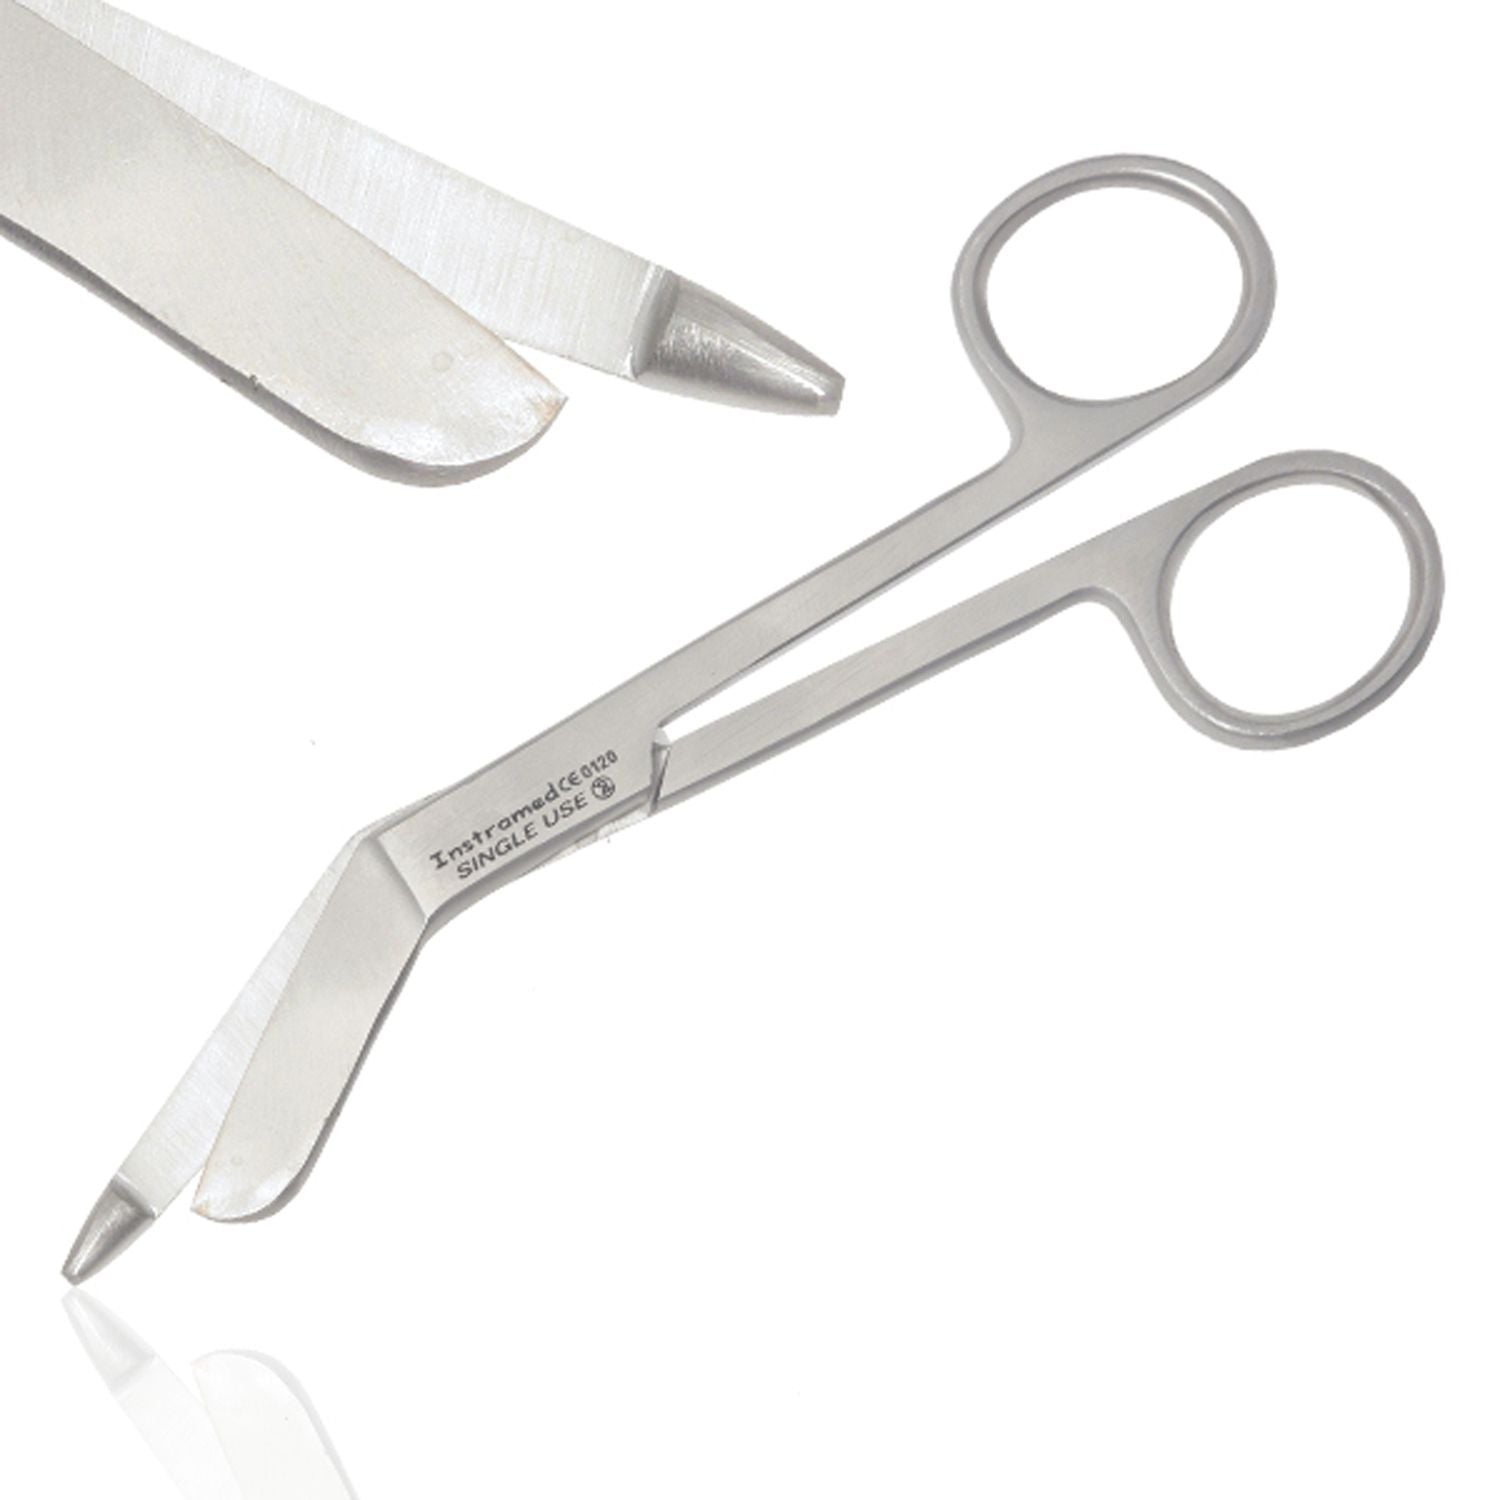 Instramed Lister Bandage Scissors | 15.5cm | Single